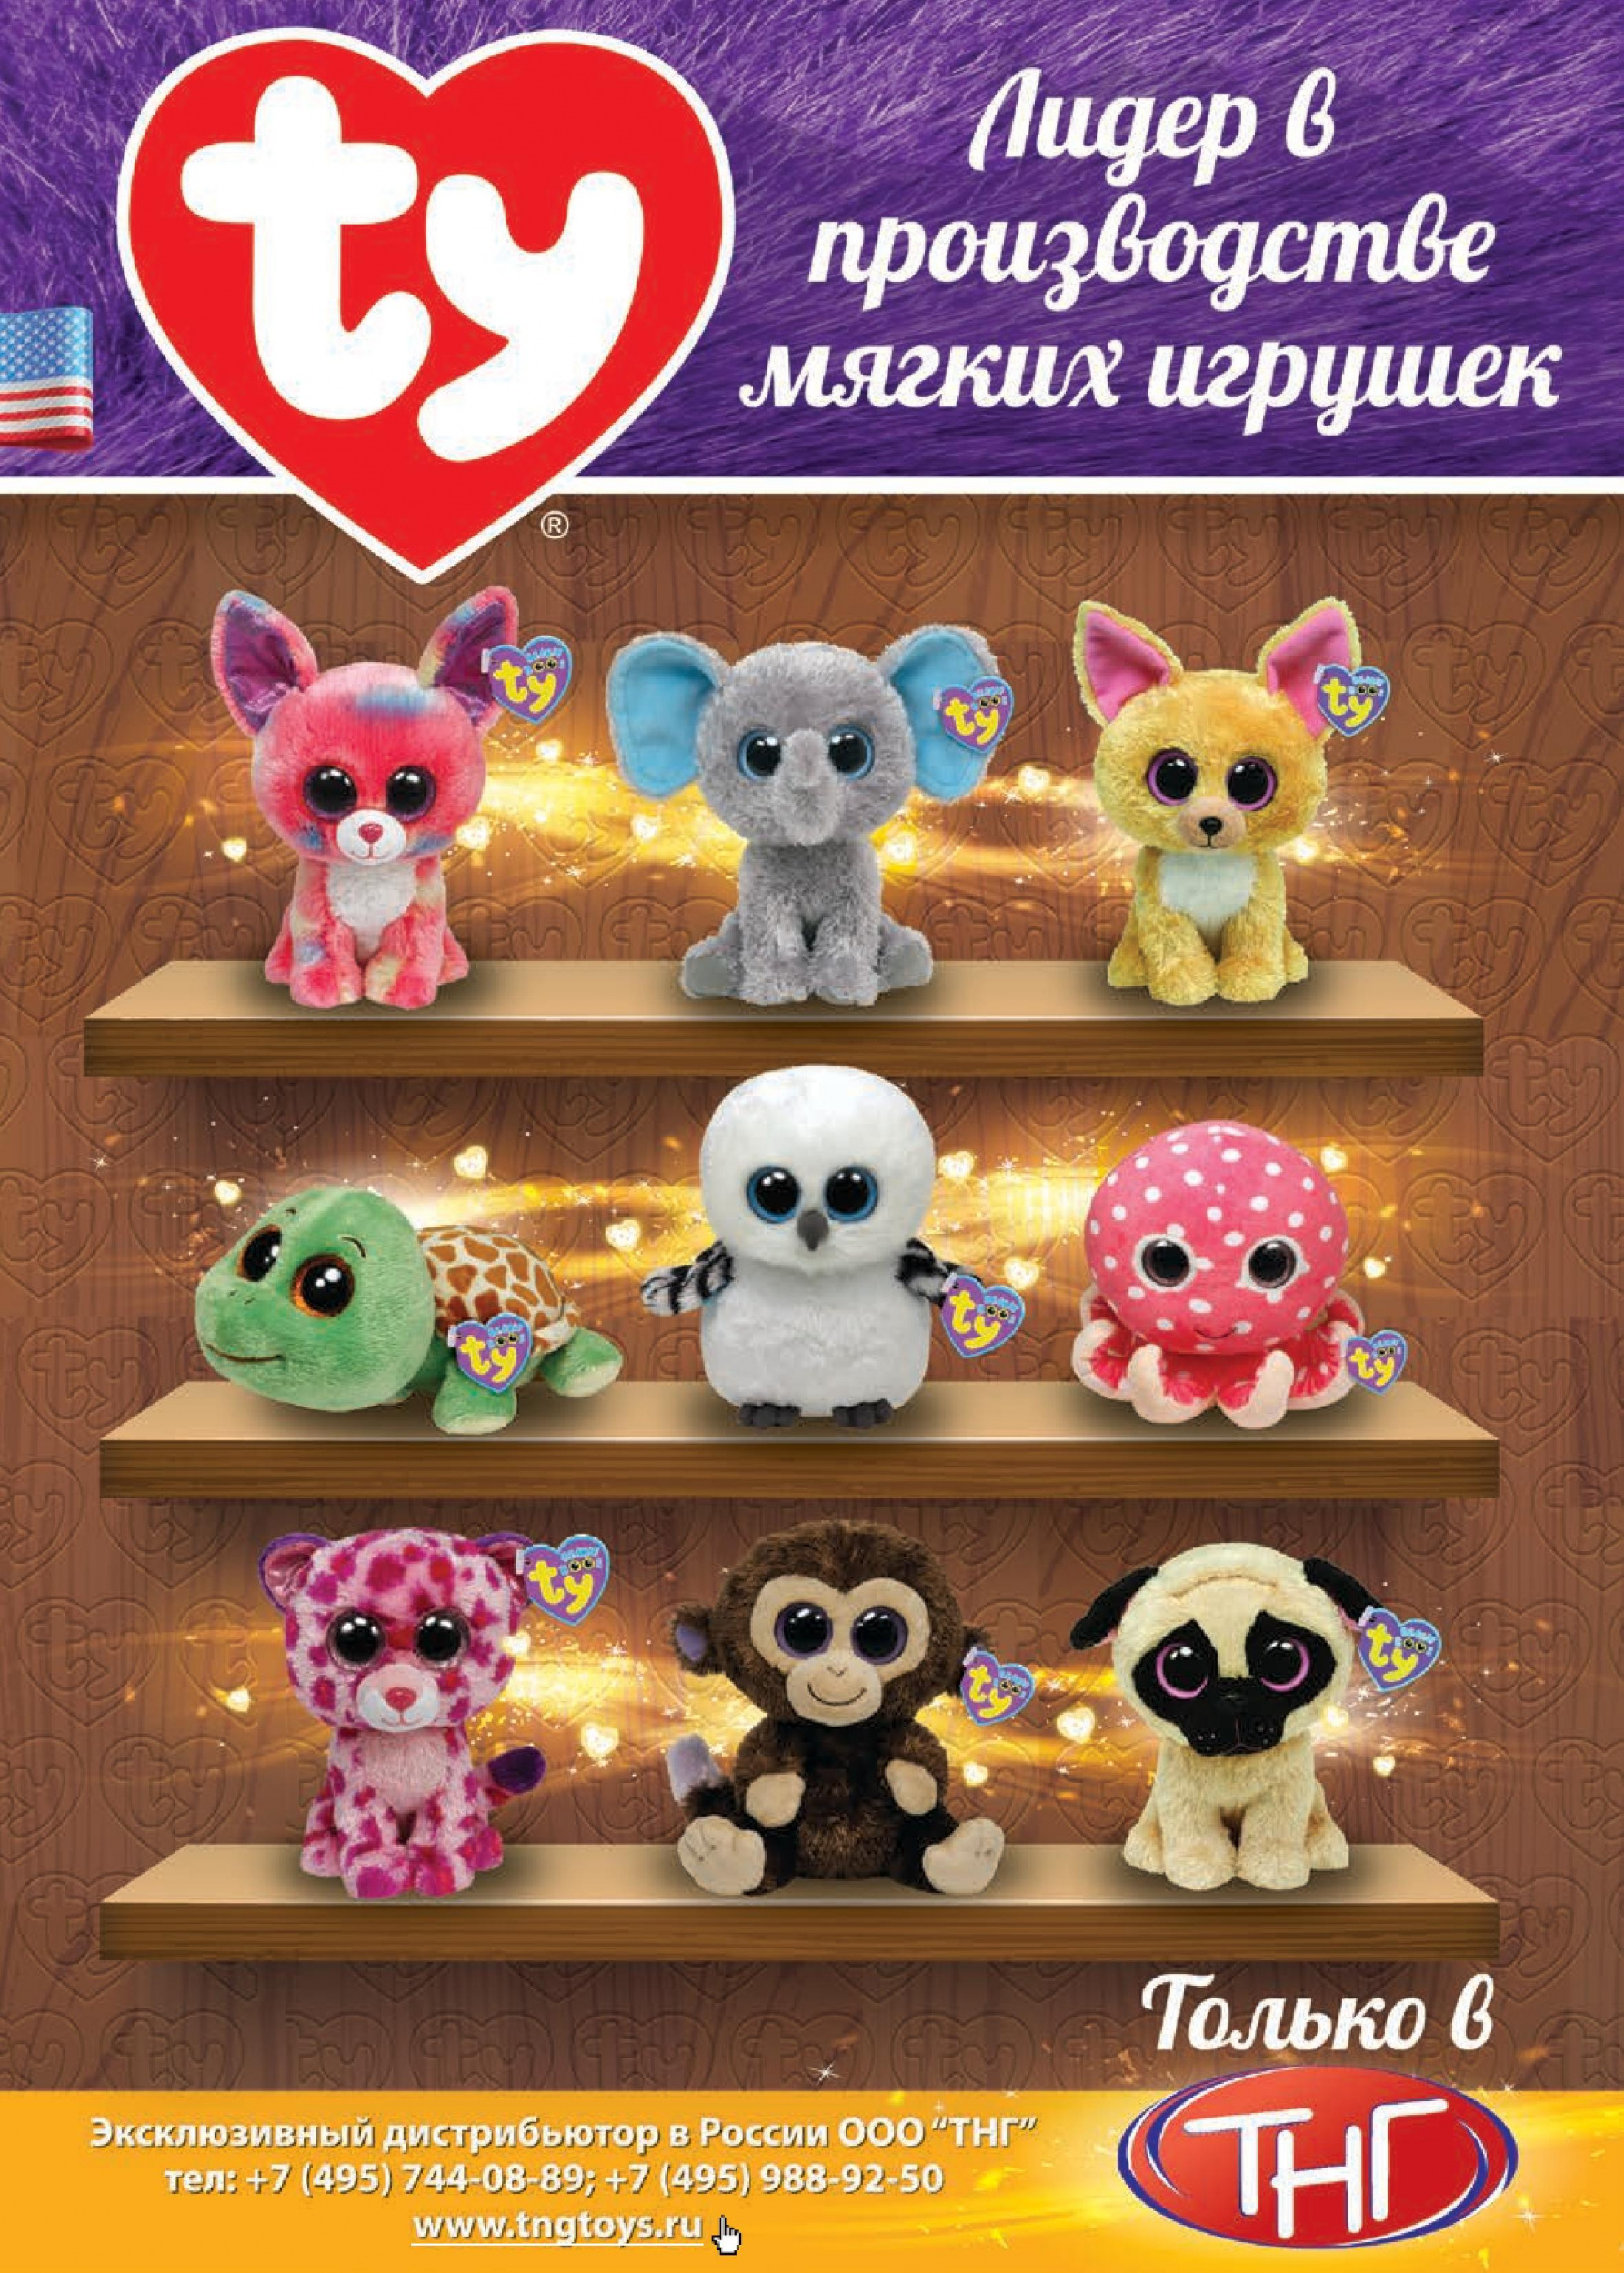 Производители мягких игрушек в России